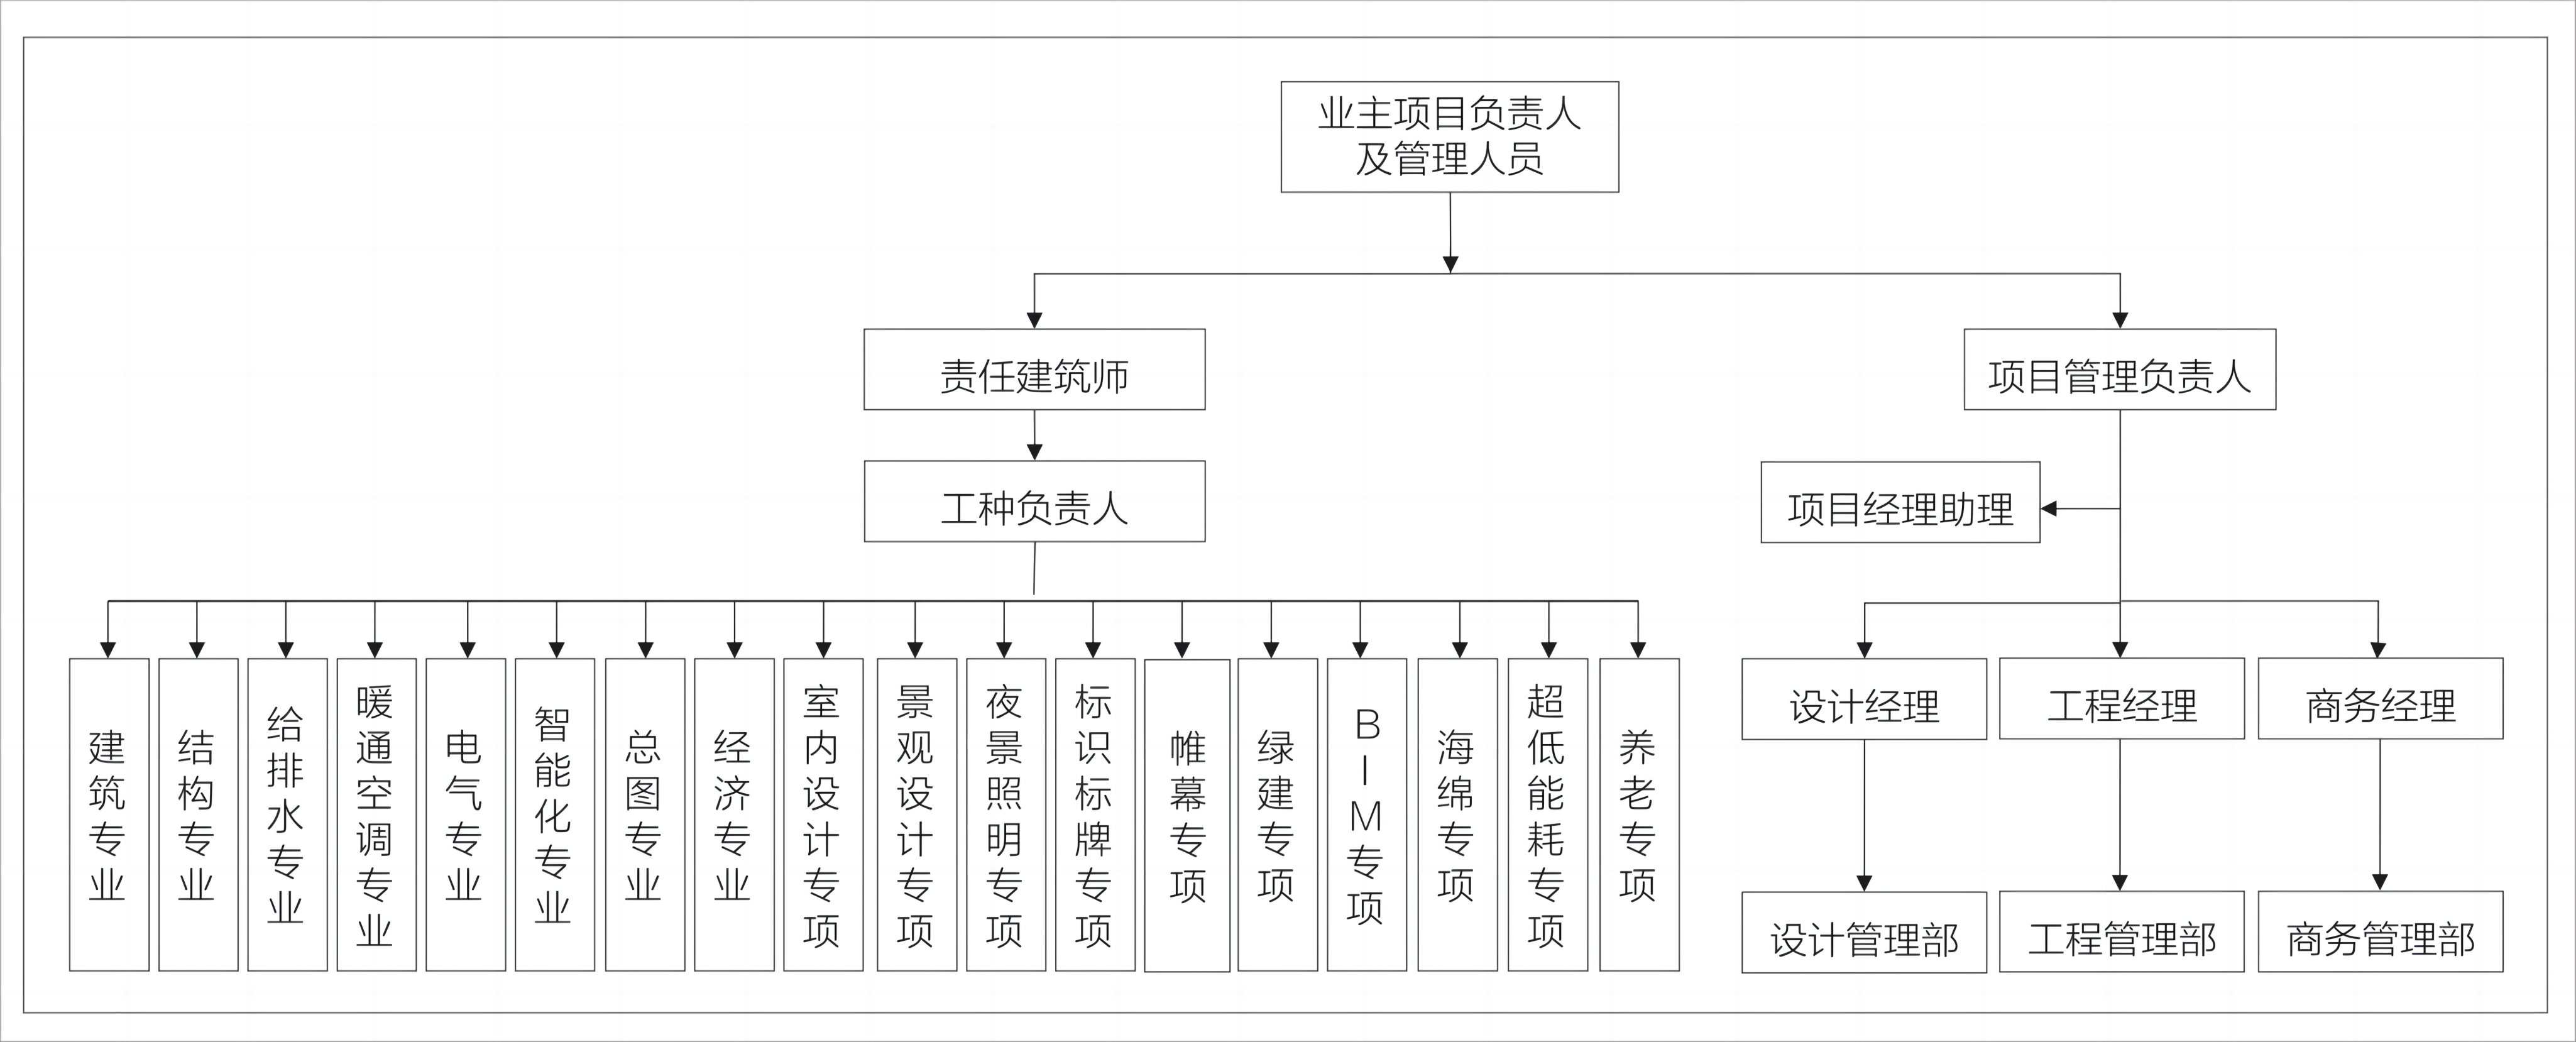 1 明光村项目IPMT组织结构图.png